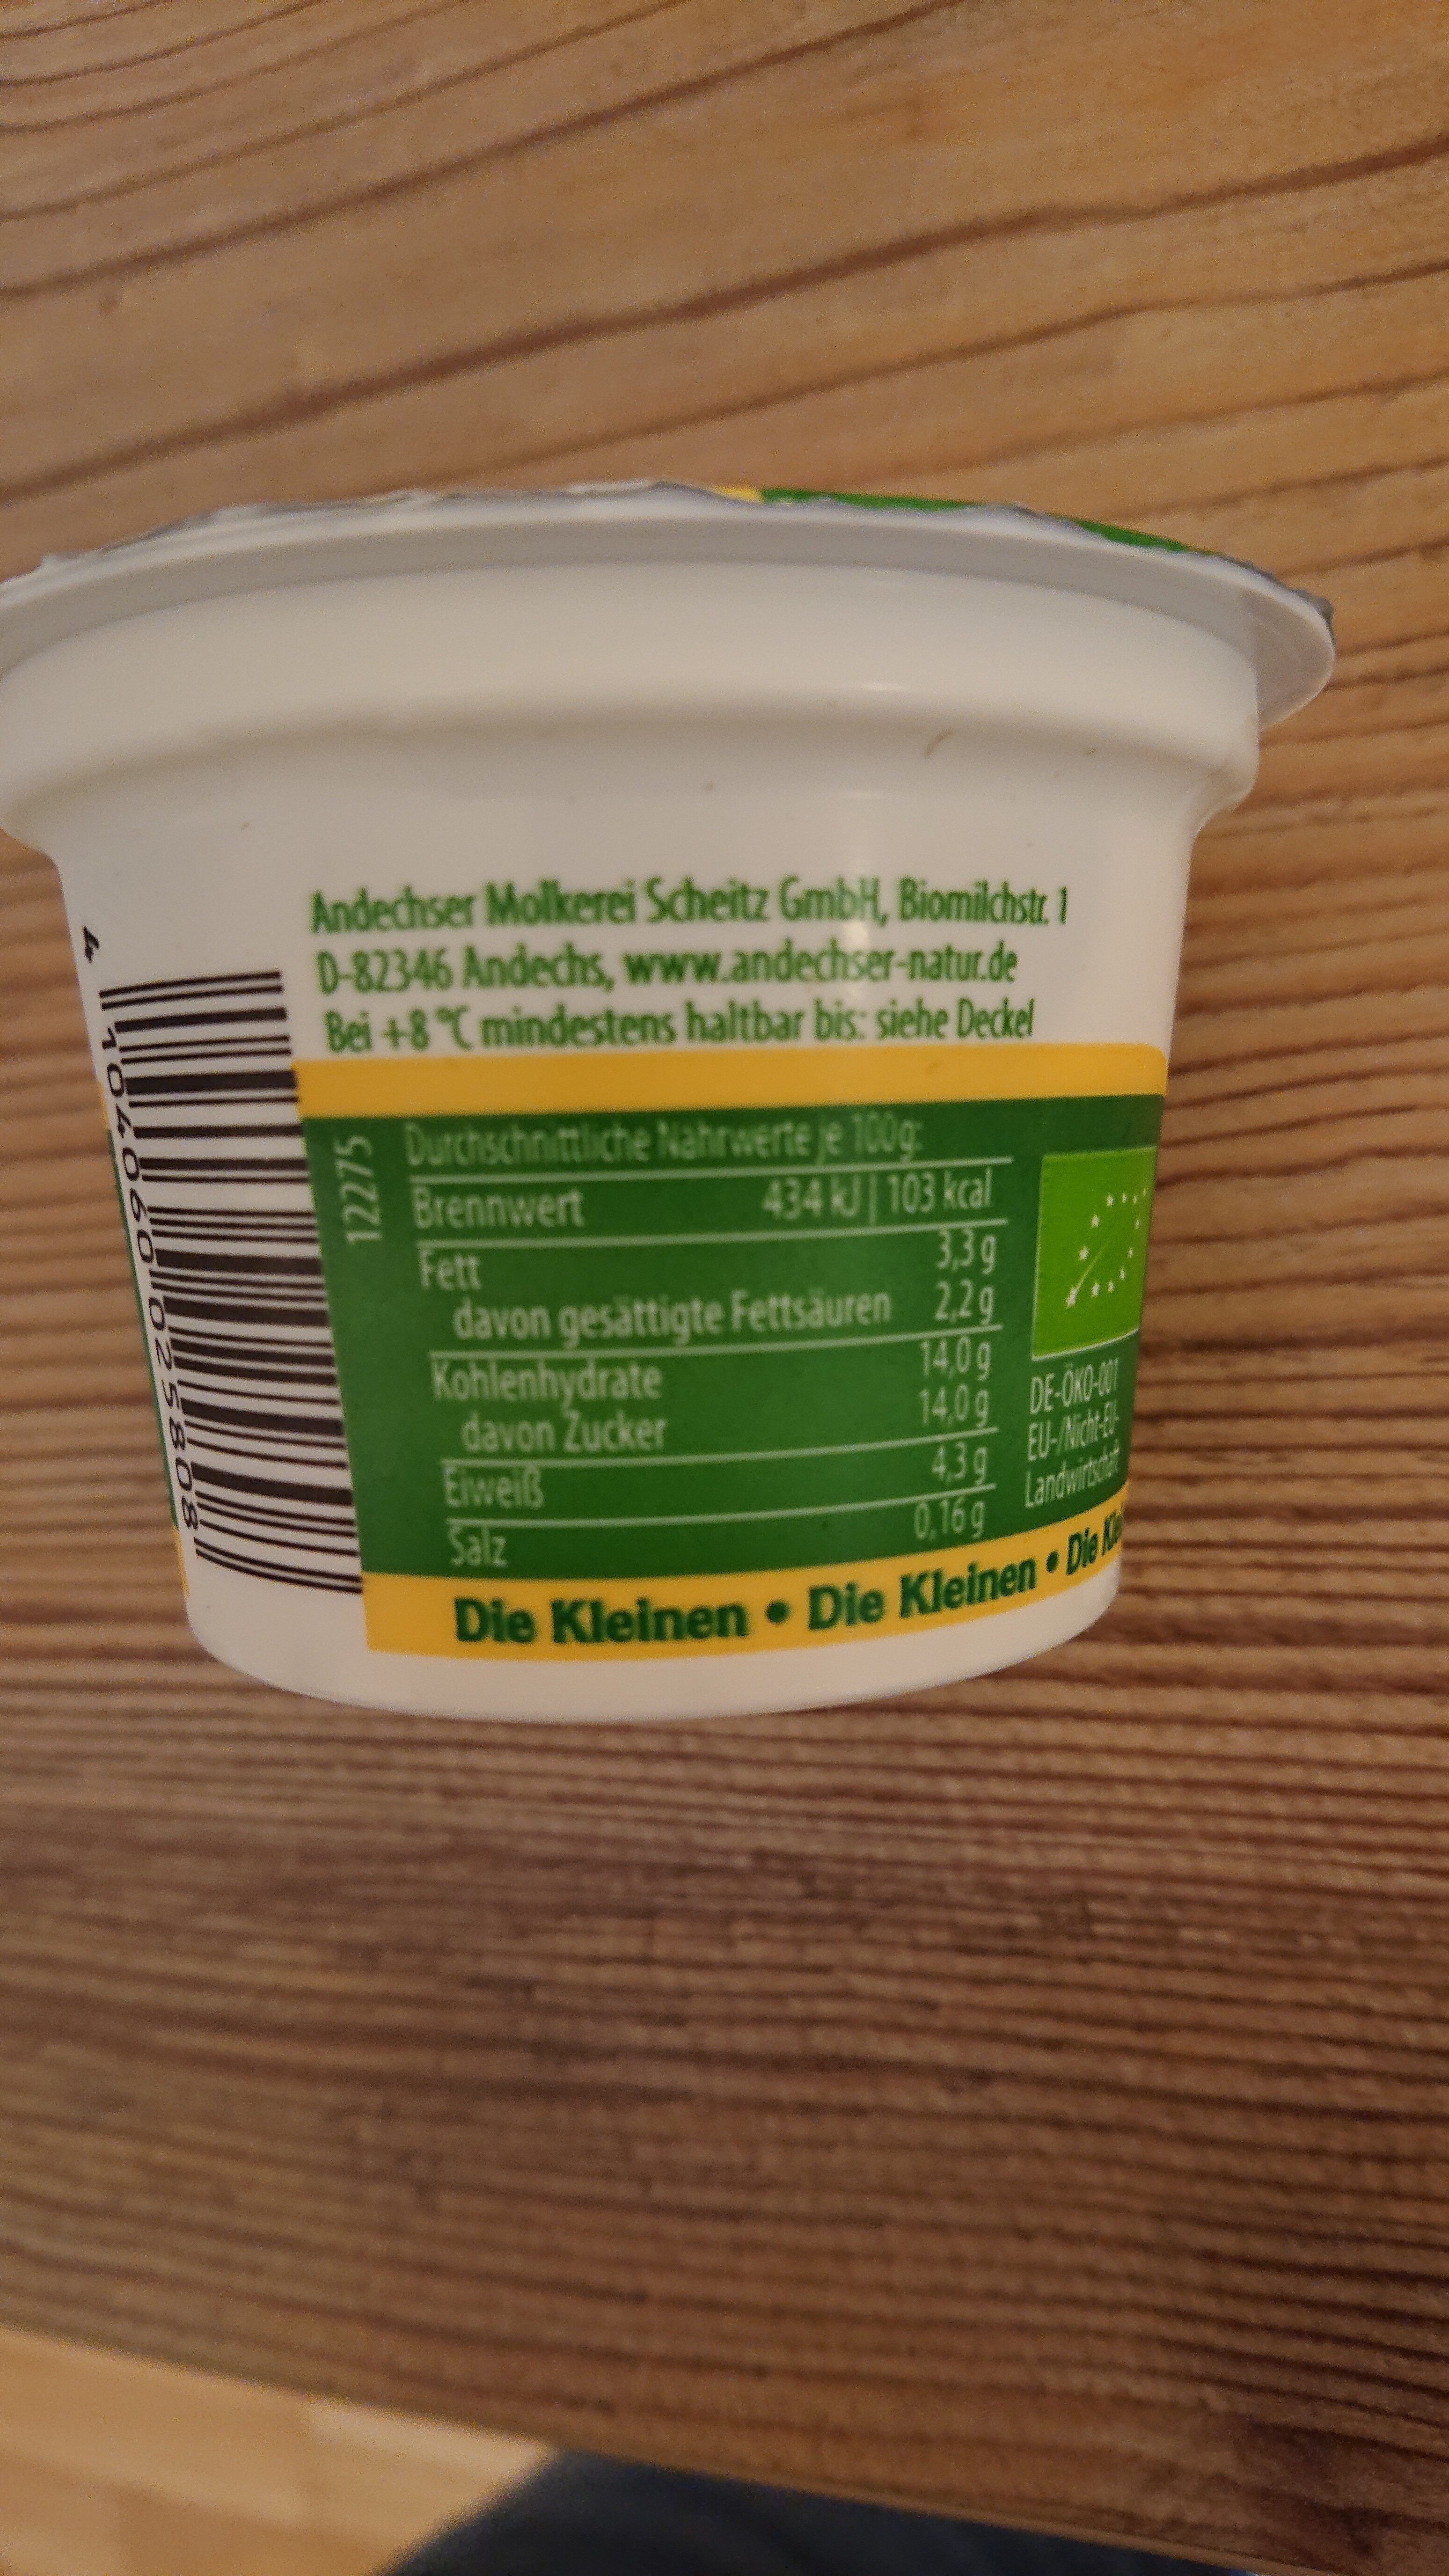 Andechser Natur "Die Kleinen Bio jogurts" Vanille - Zutaten